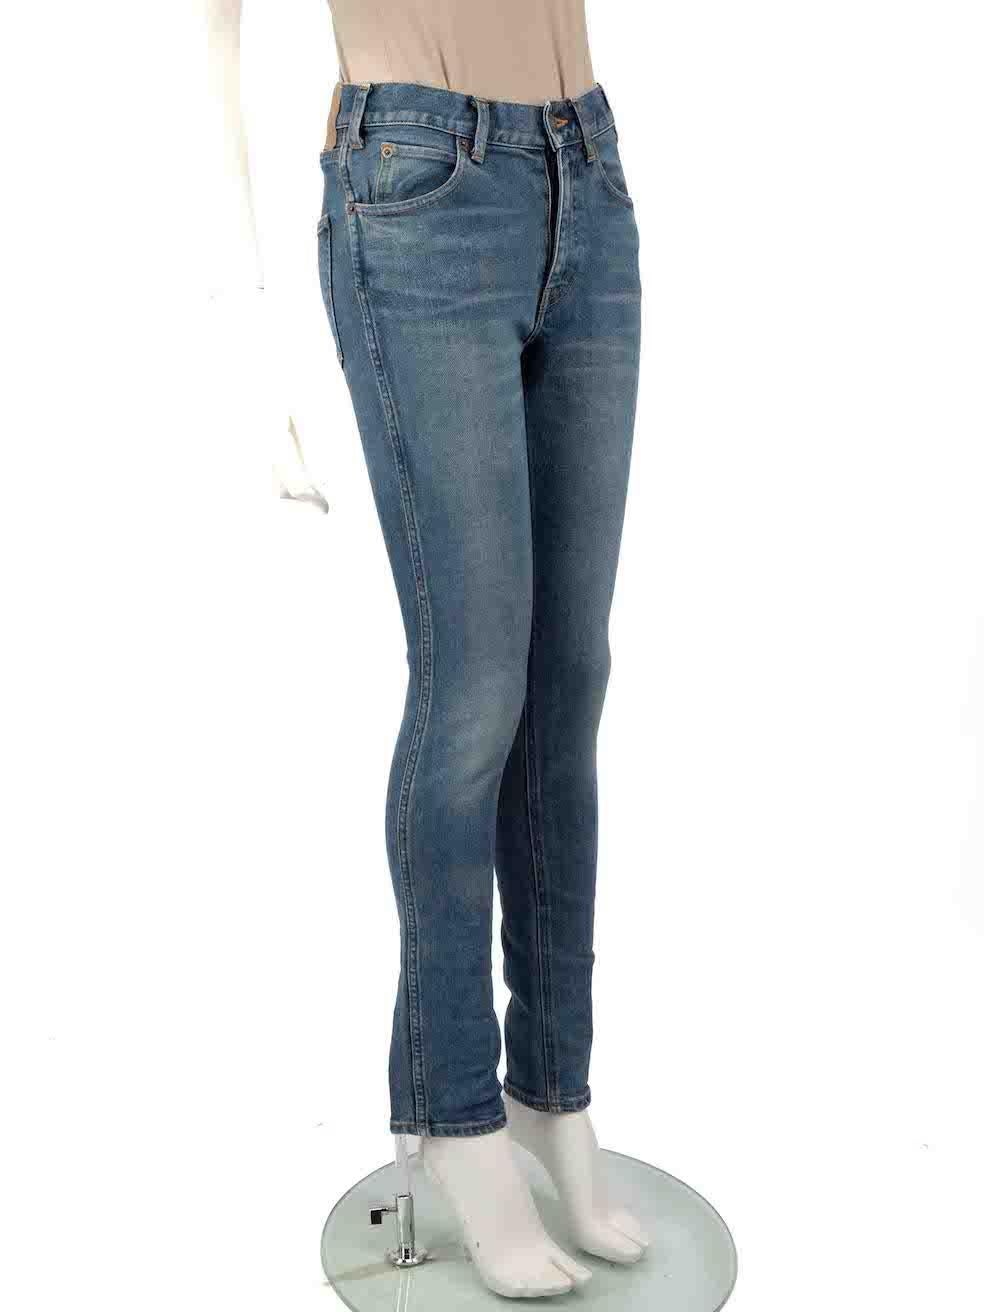 L'ÉTAT est très bon. L'usure minimale du jean est évidente. Cet article de revente d'occasion de Céline présente une usure minimale sur le devant et une marque de décoloration près de la poche gauche.
 
 
 
 Détails
 
 
 Bleu
 
 Denim
 
 Jeans
 
